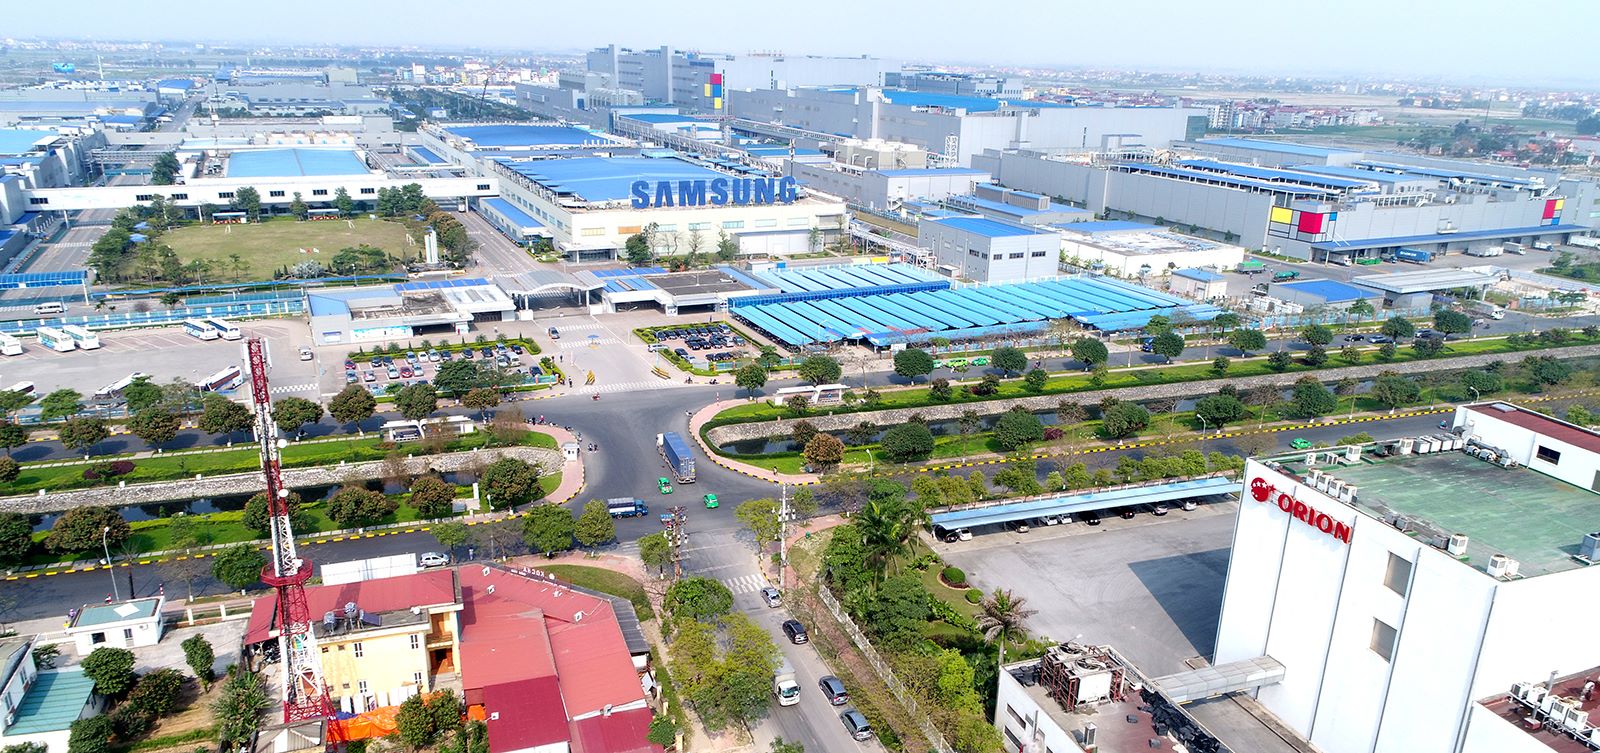 Ba yếu tố tăng sức hấp dẫn cho thị trường bất động sản công nghiệp Việt Nam